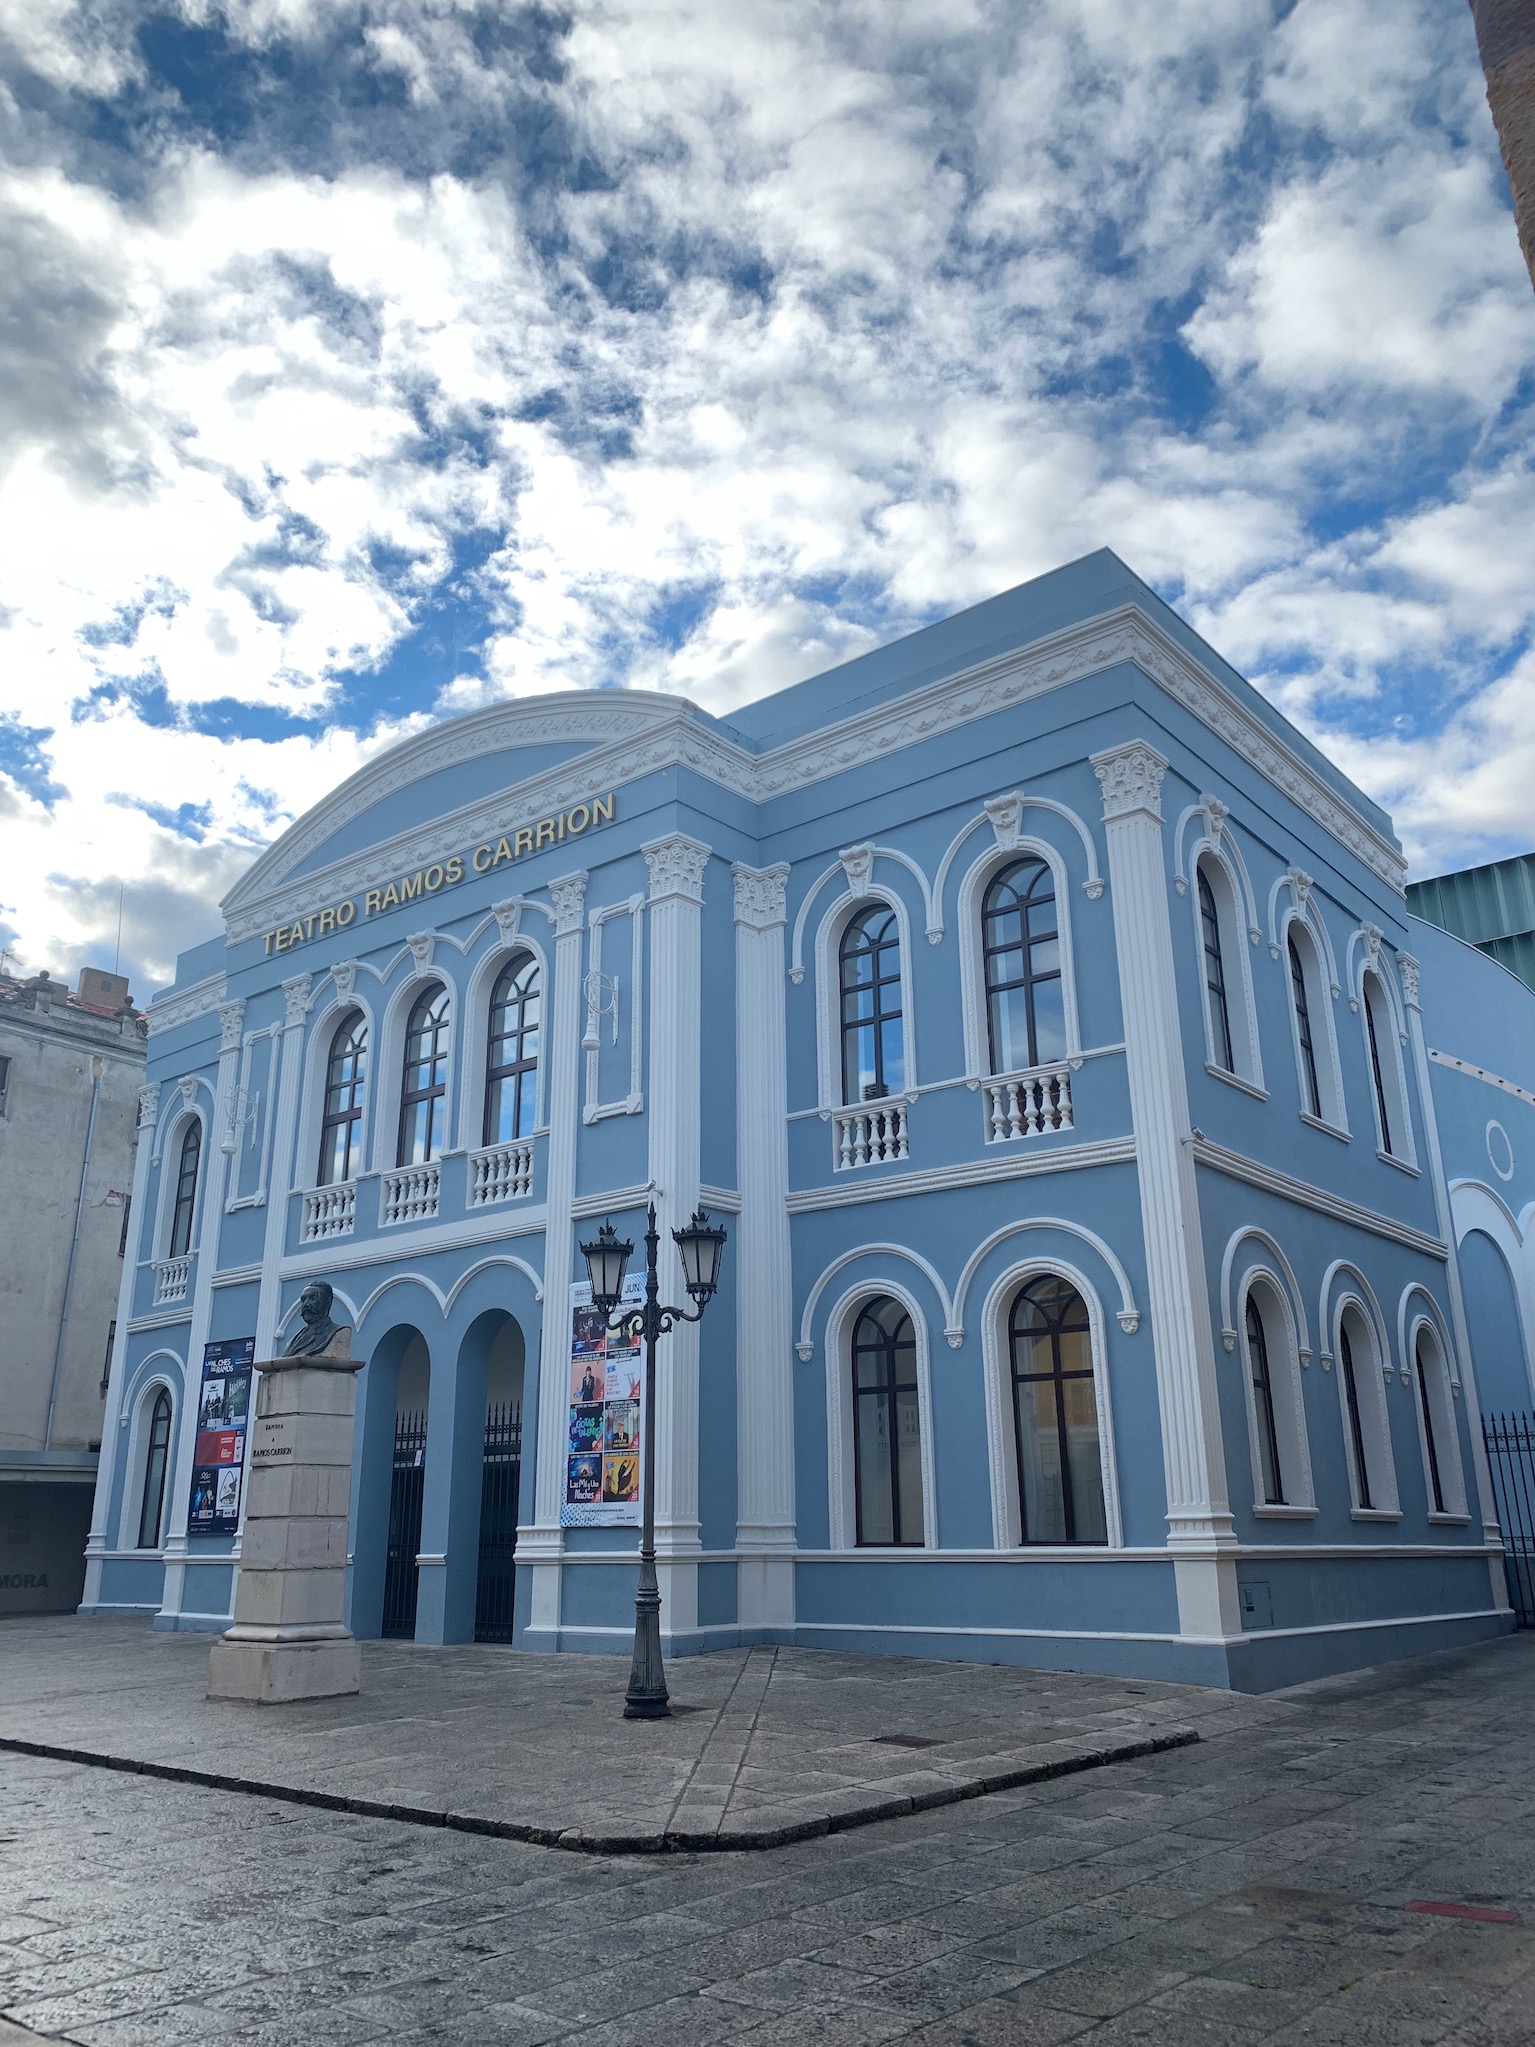 The Blue Theatre - Zamora